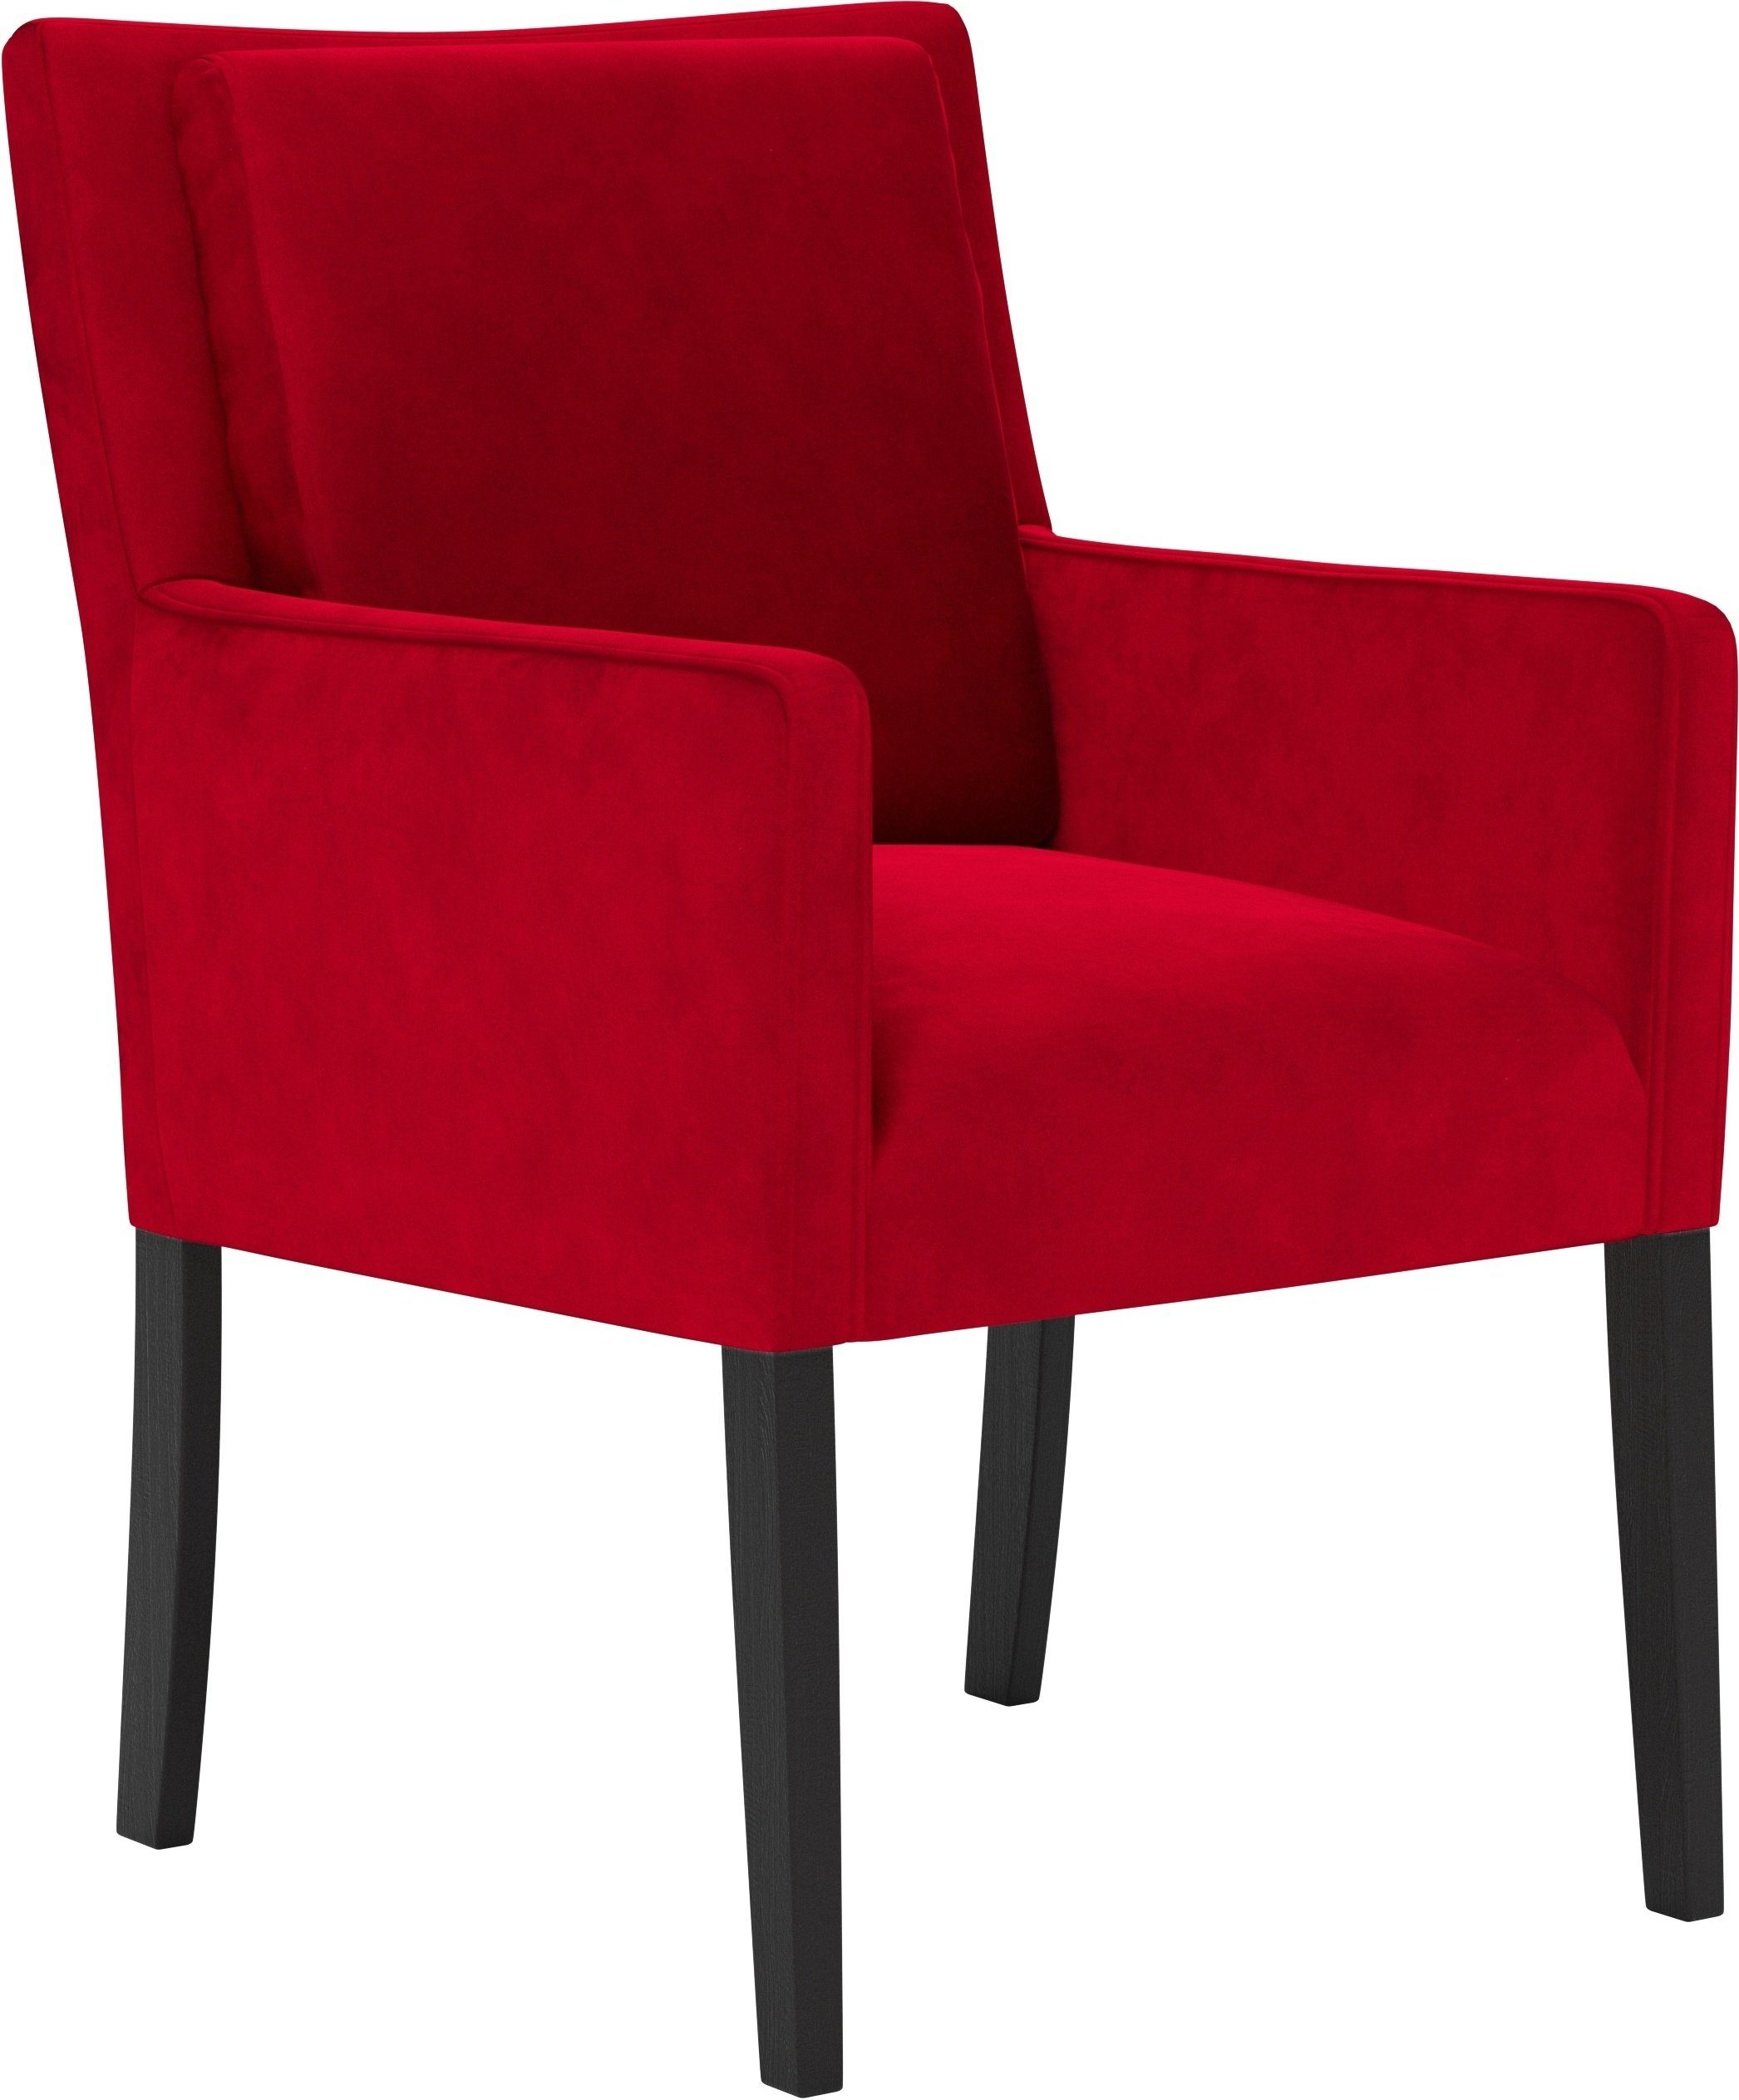 Home affaire Armlehnstuhl Elona, Sitz und Rücken gepolstert, Stuhlbeine aus  Massivholz, Sitzhöhe 50 cm | Stühle